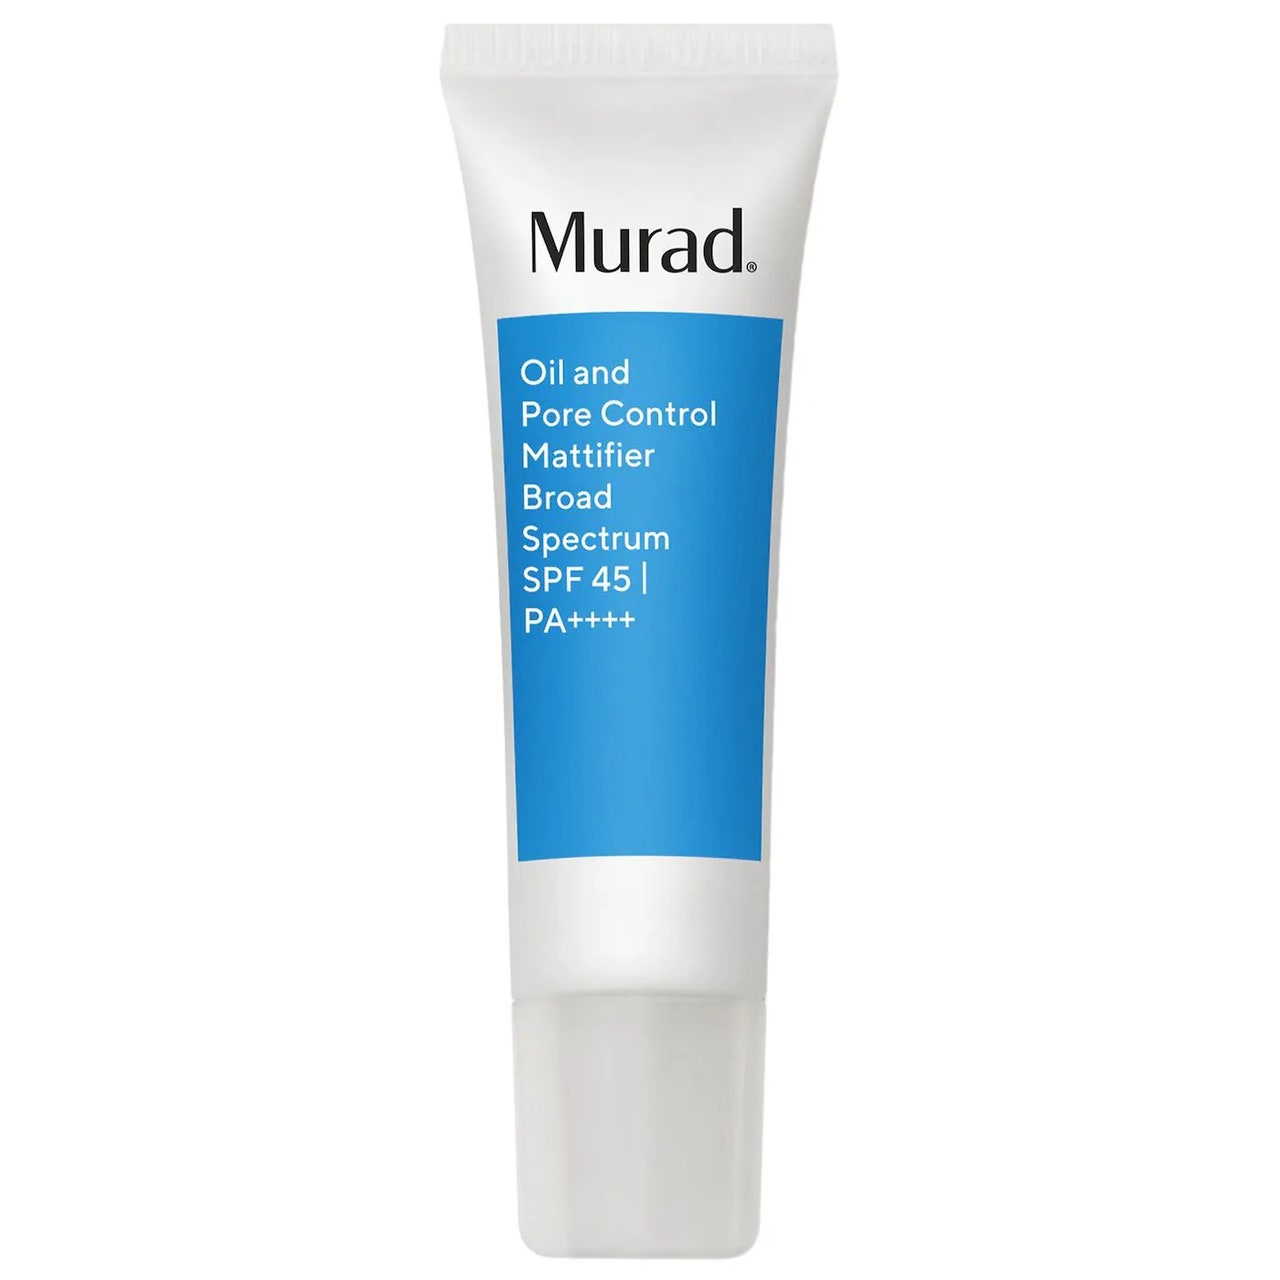 Murad Acne Control Oil and Pore Control Mattifier Broad Spectrum SPF 45 weiße Tube mit blauem Etikett auf weißem Hintergrund